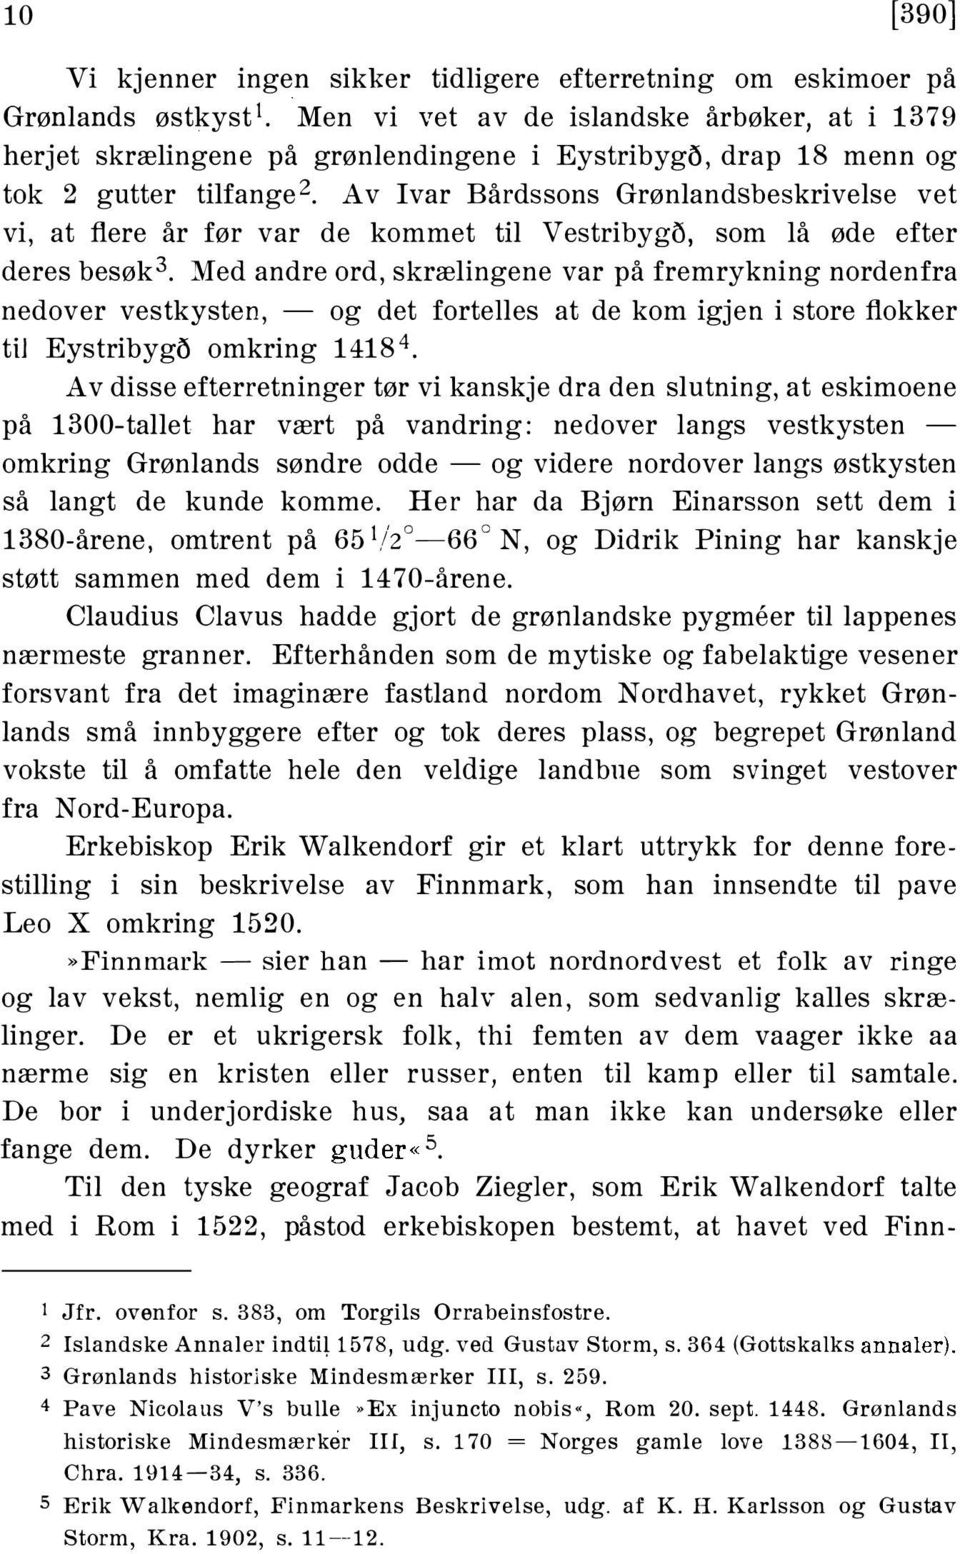 Med andre ord, skrælingene var på fremrykning nordenfra nedover vestkysten, - og det fortelles at de kom igjen i store flokker til Eystribyg5 omkring 14184.